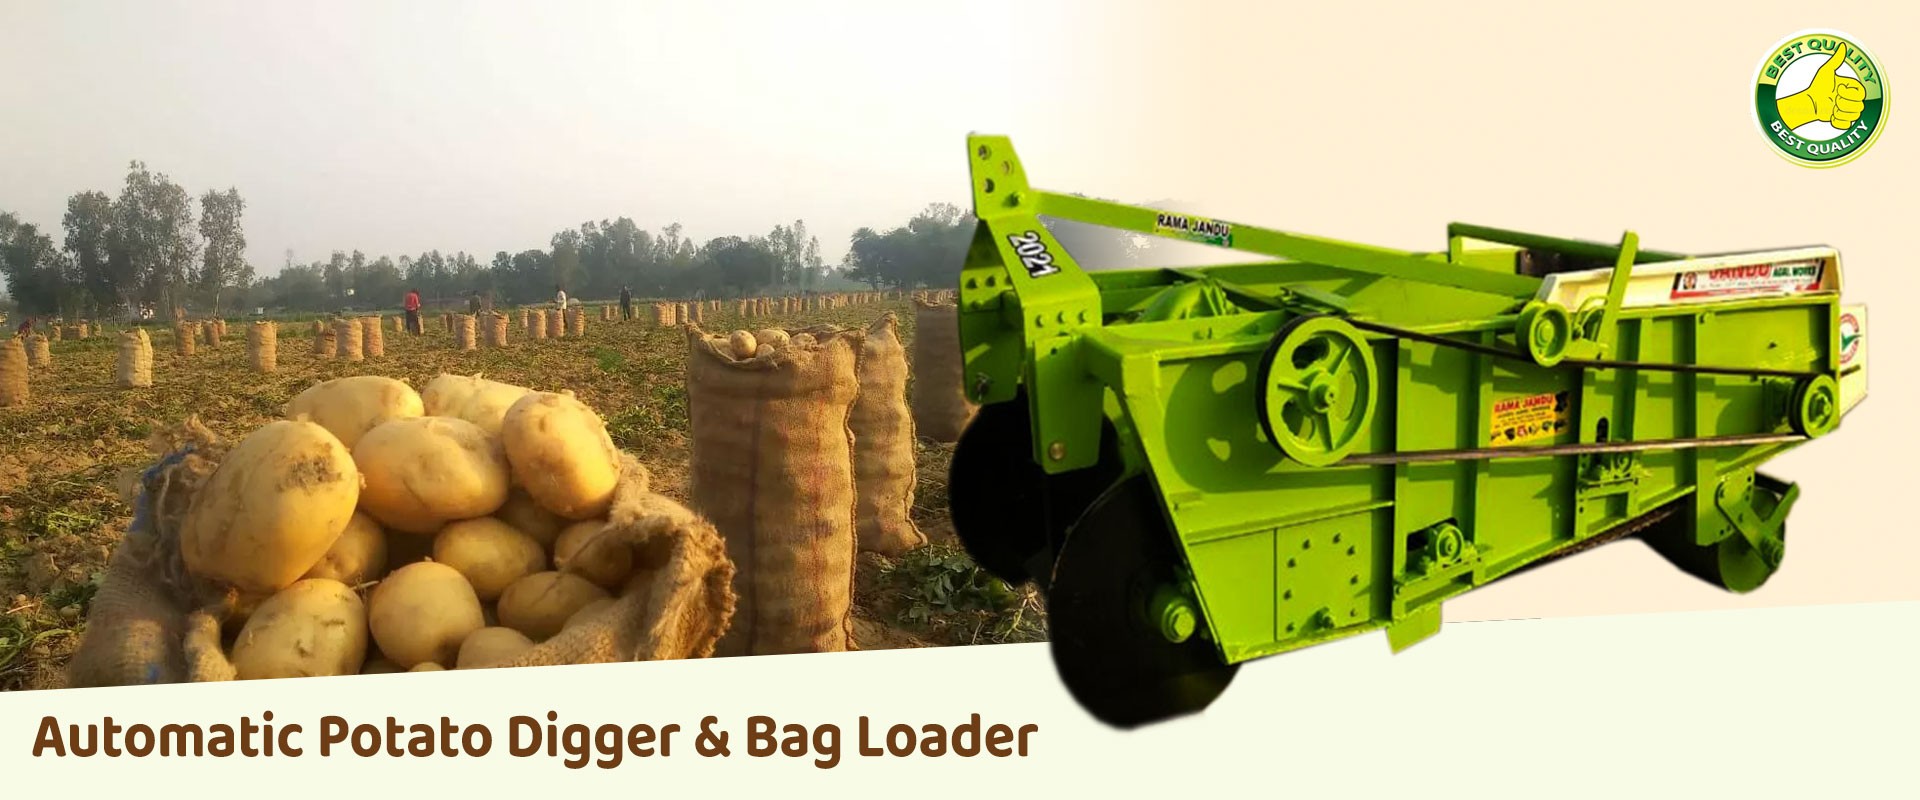 Automatic Potato Digger & Bag Loader Slide